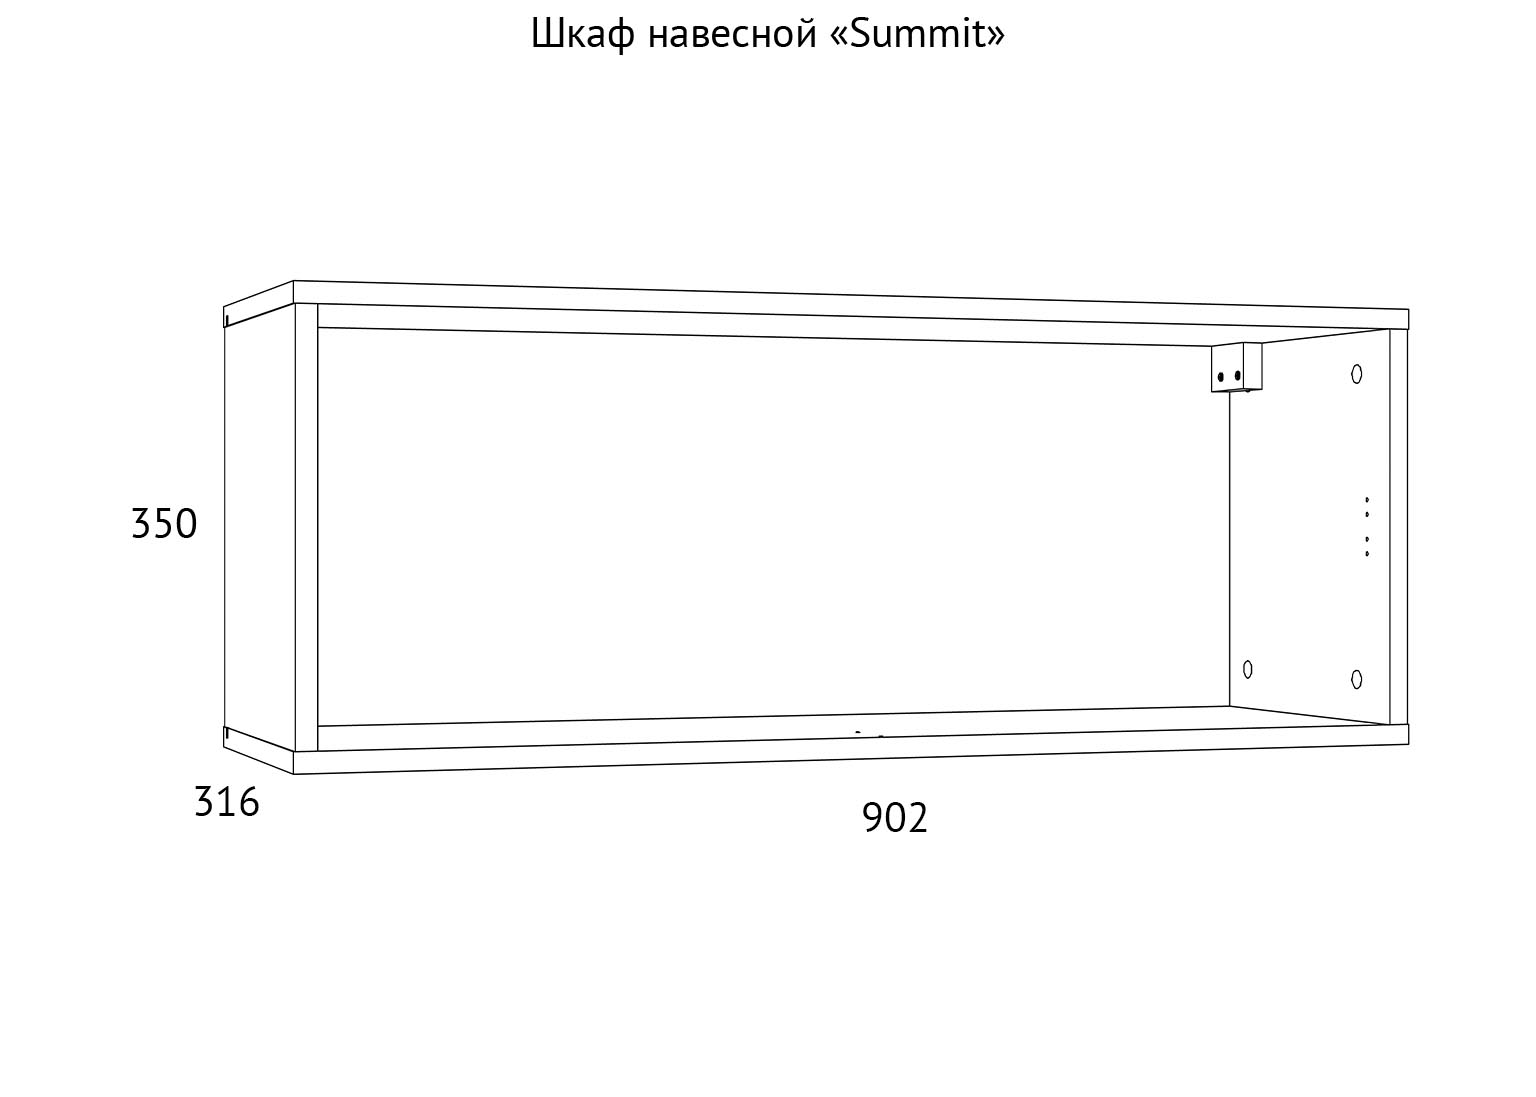 НМ 014.21-01 Шкаф навесной Summit схема Мебель Краснодар